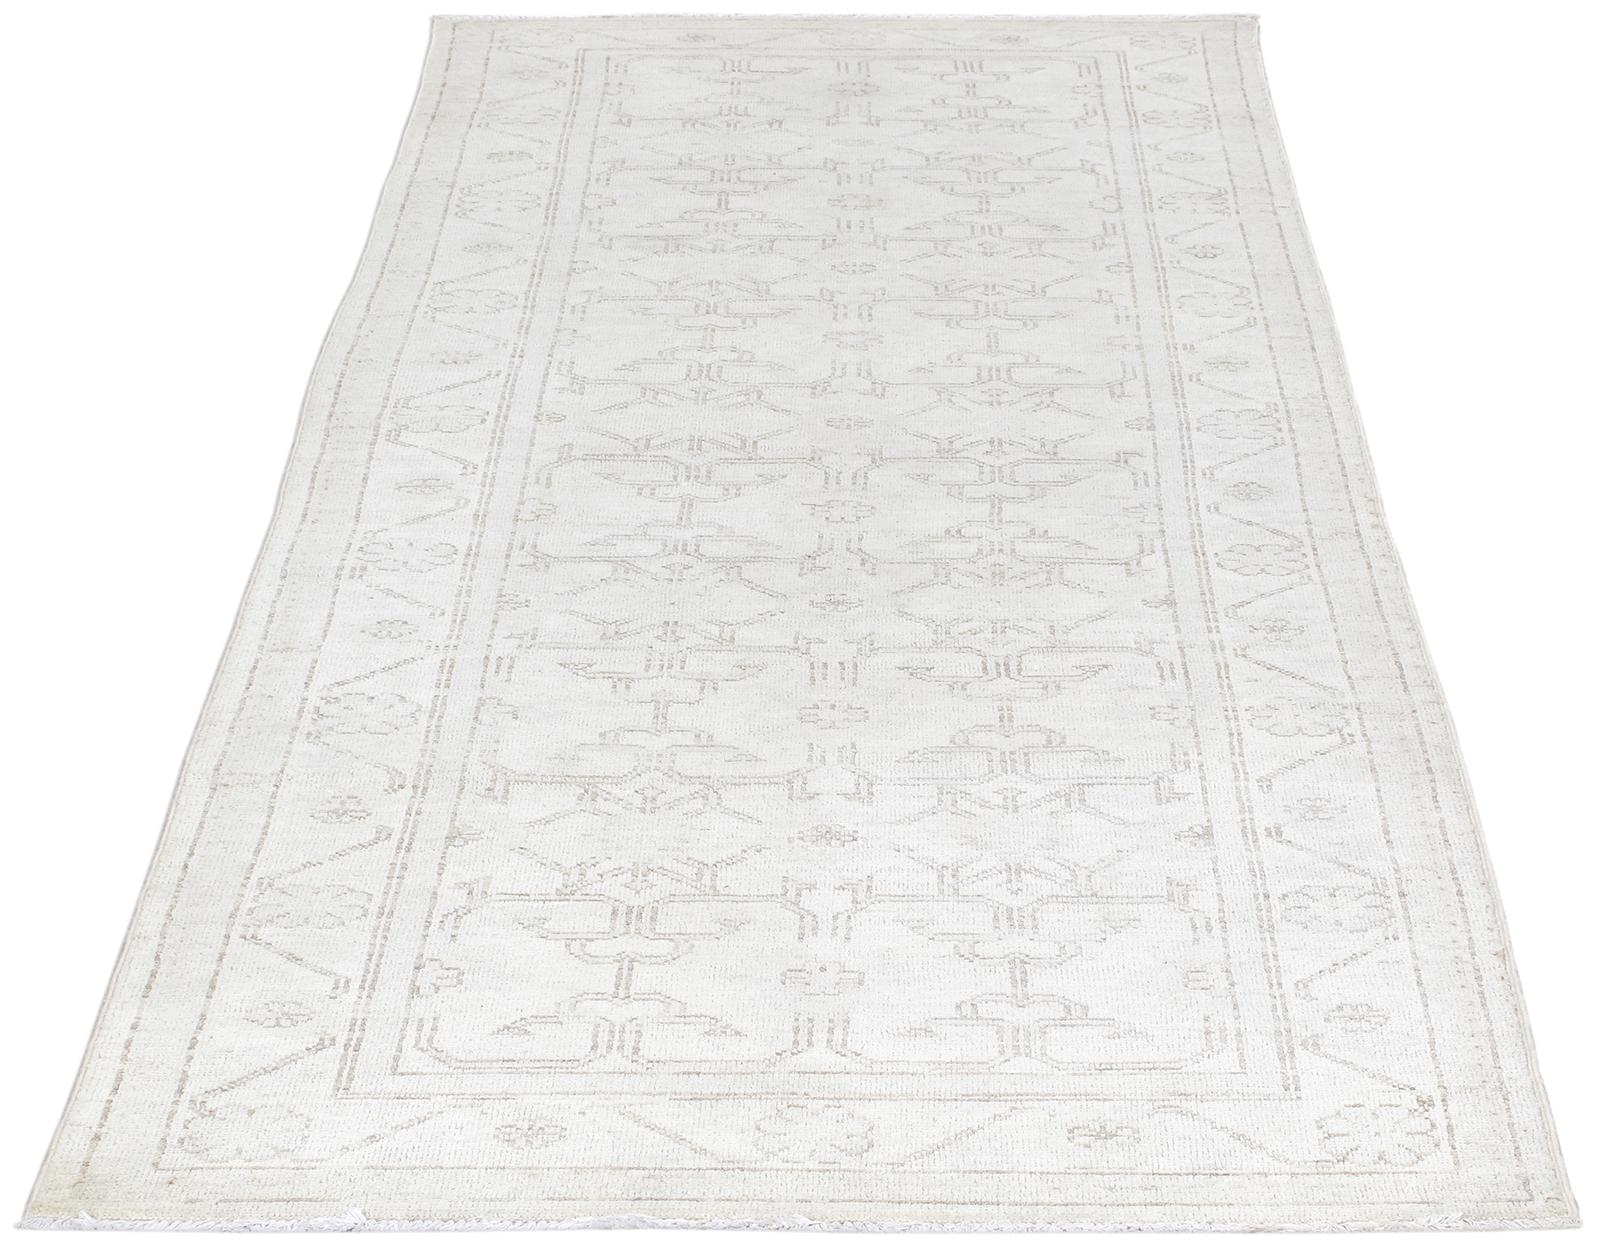 Khotan-Teppiche wurden ursprünglich in Ostturkestan hergestellt und werden aufgrund ihrer Nähe zum gleichnamigen kulturellen Zentrum auch als Samarkand-Teppiche bezeichnet. Khotan-Teppiche zeichnen sich durch ihre geometrischen Muster aus, die von